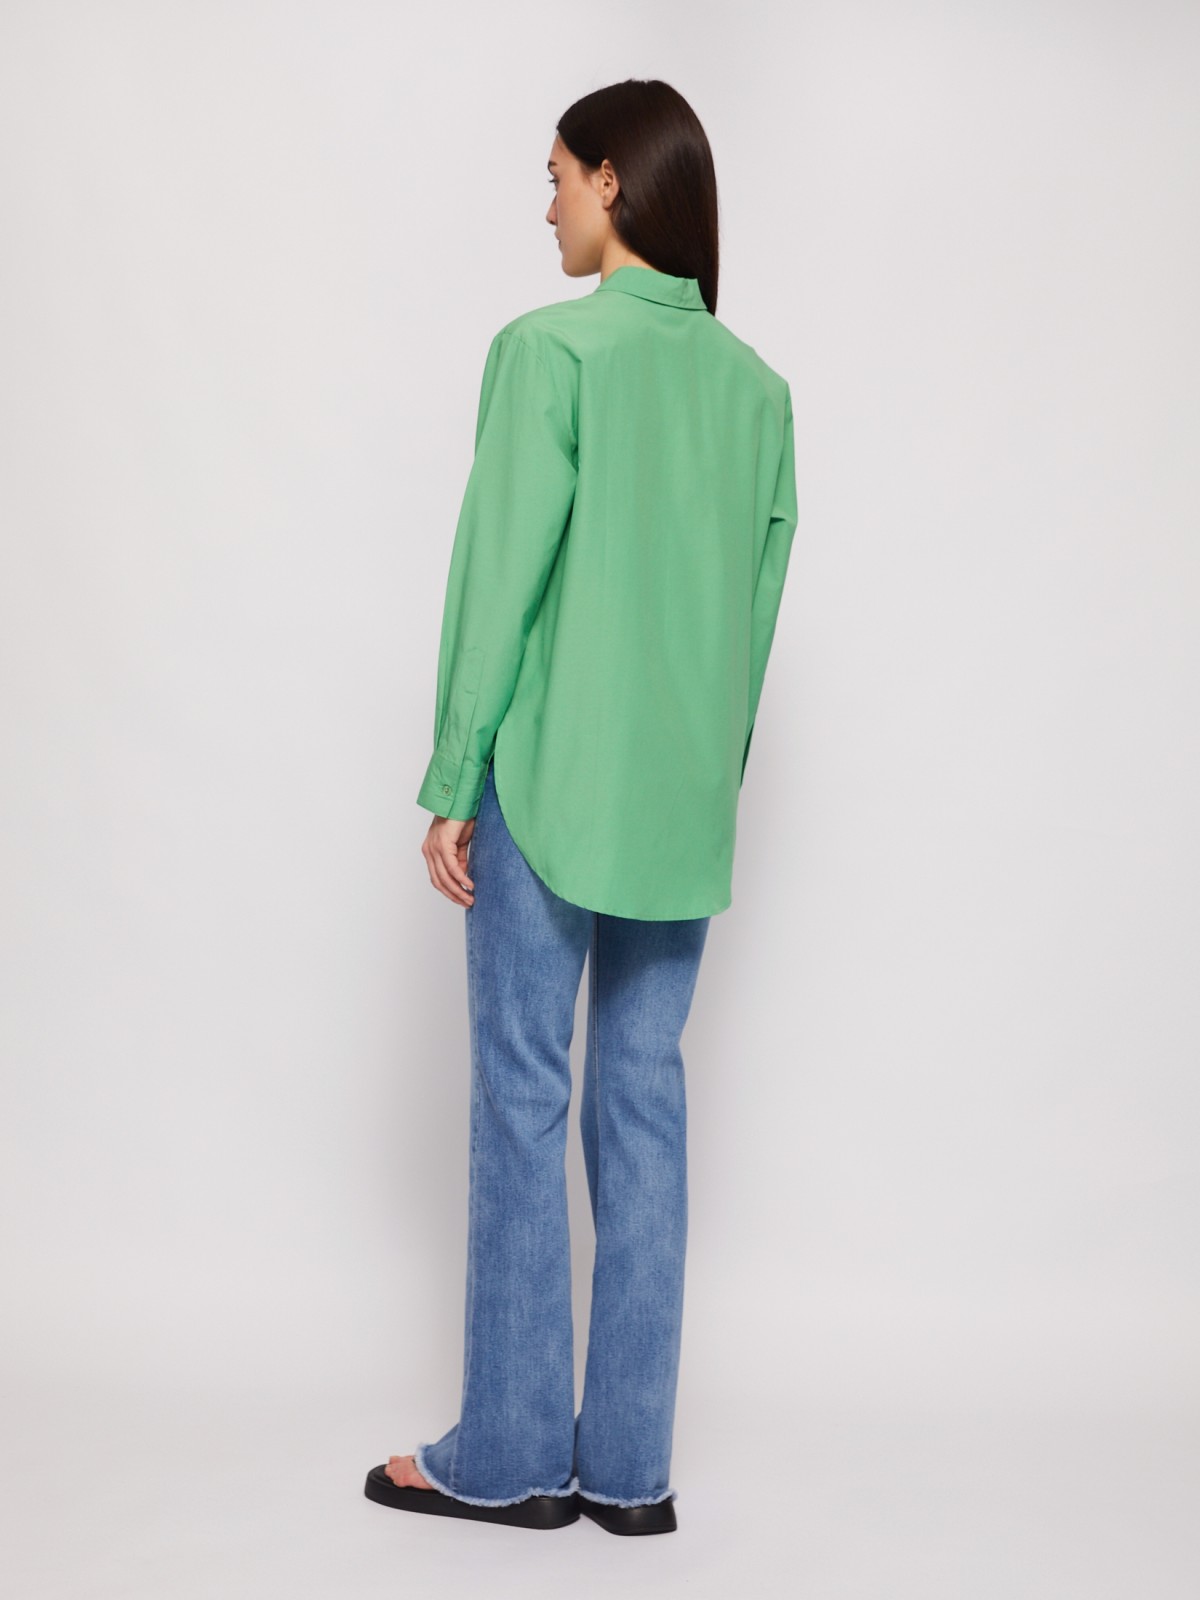 Рубашка прямого фасона с принтом zolla 024221159313, цвет зеленый, размер M - фото 6